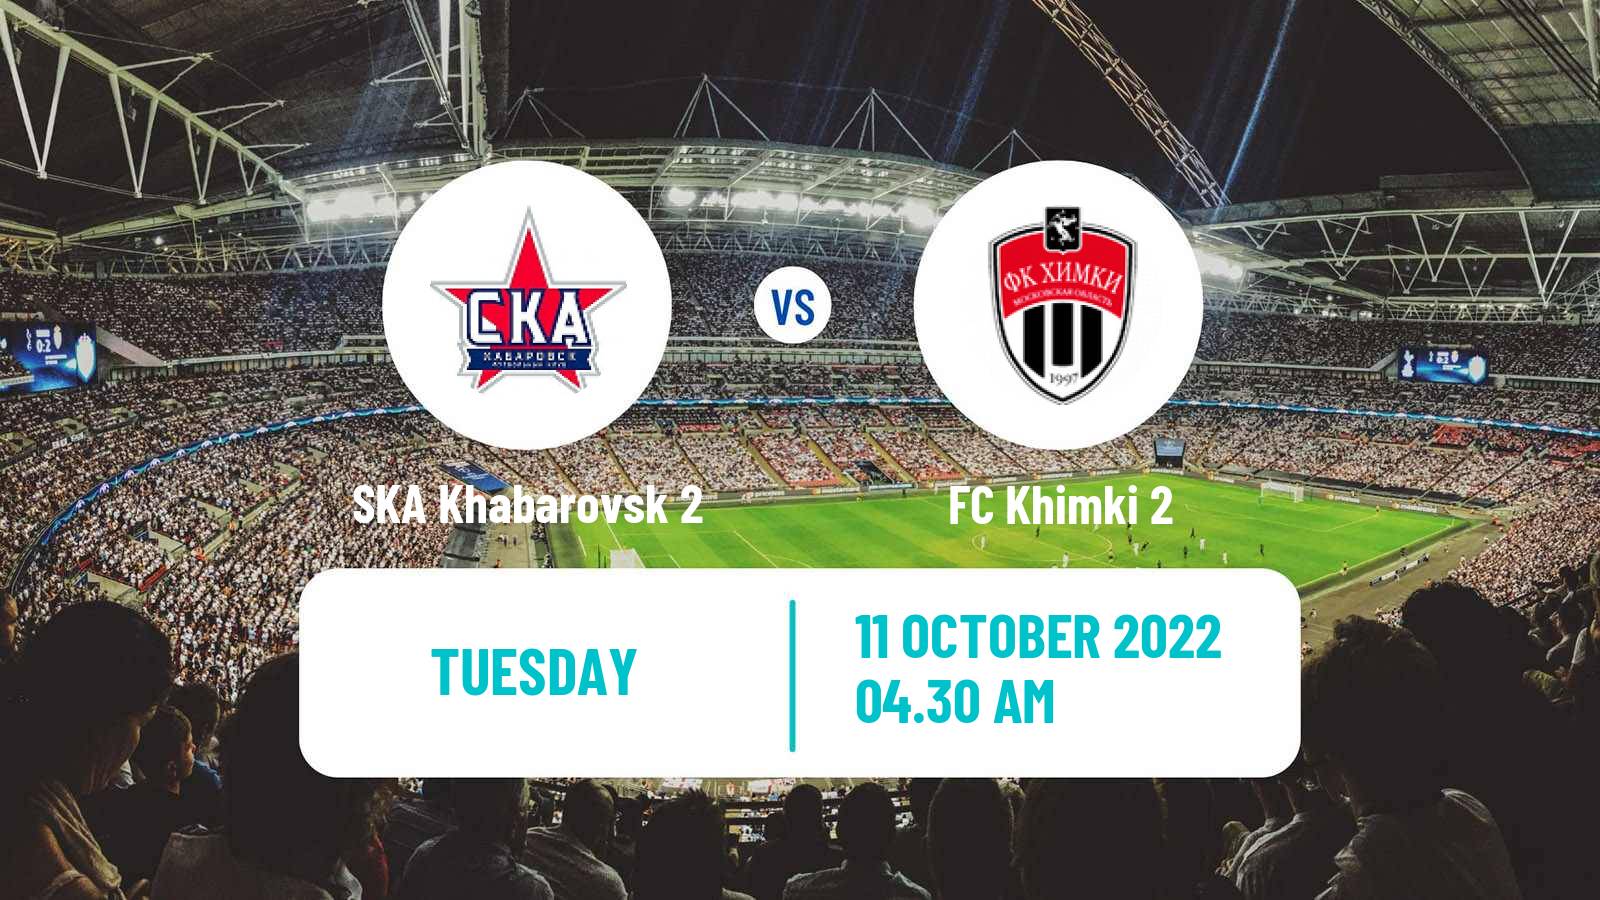 Soccer Russian FNL 2 Group 3 SKA Khabarovsk 2 - Khimki 2